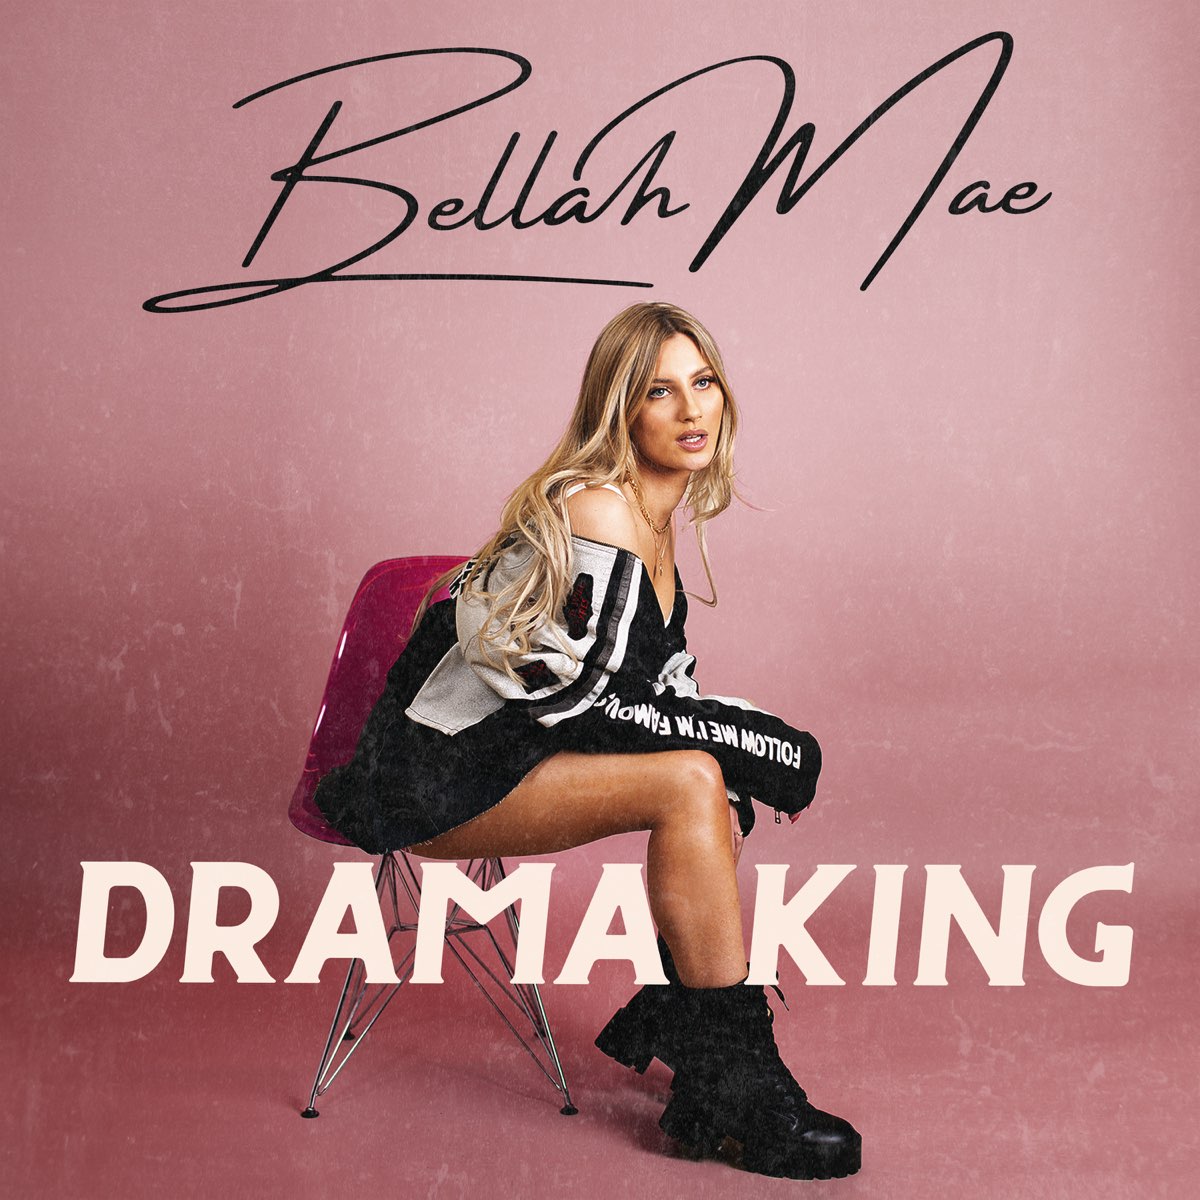 Drama king lyrics bellah mae